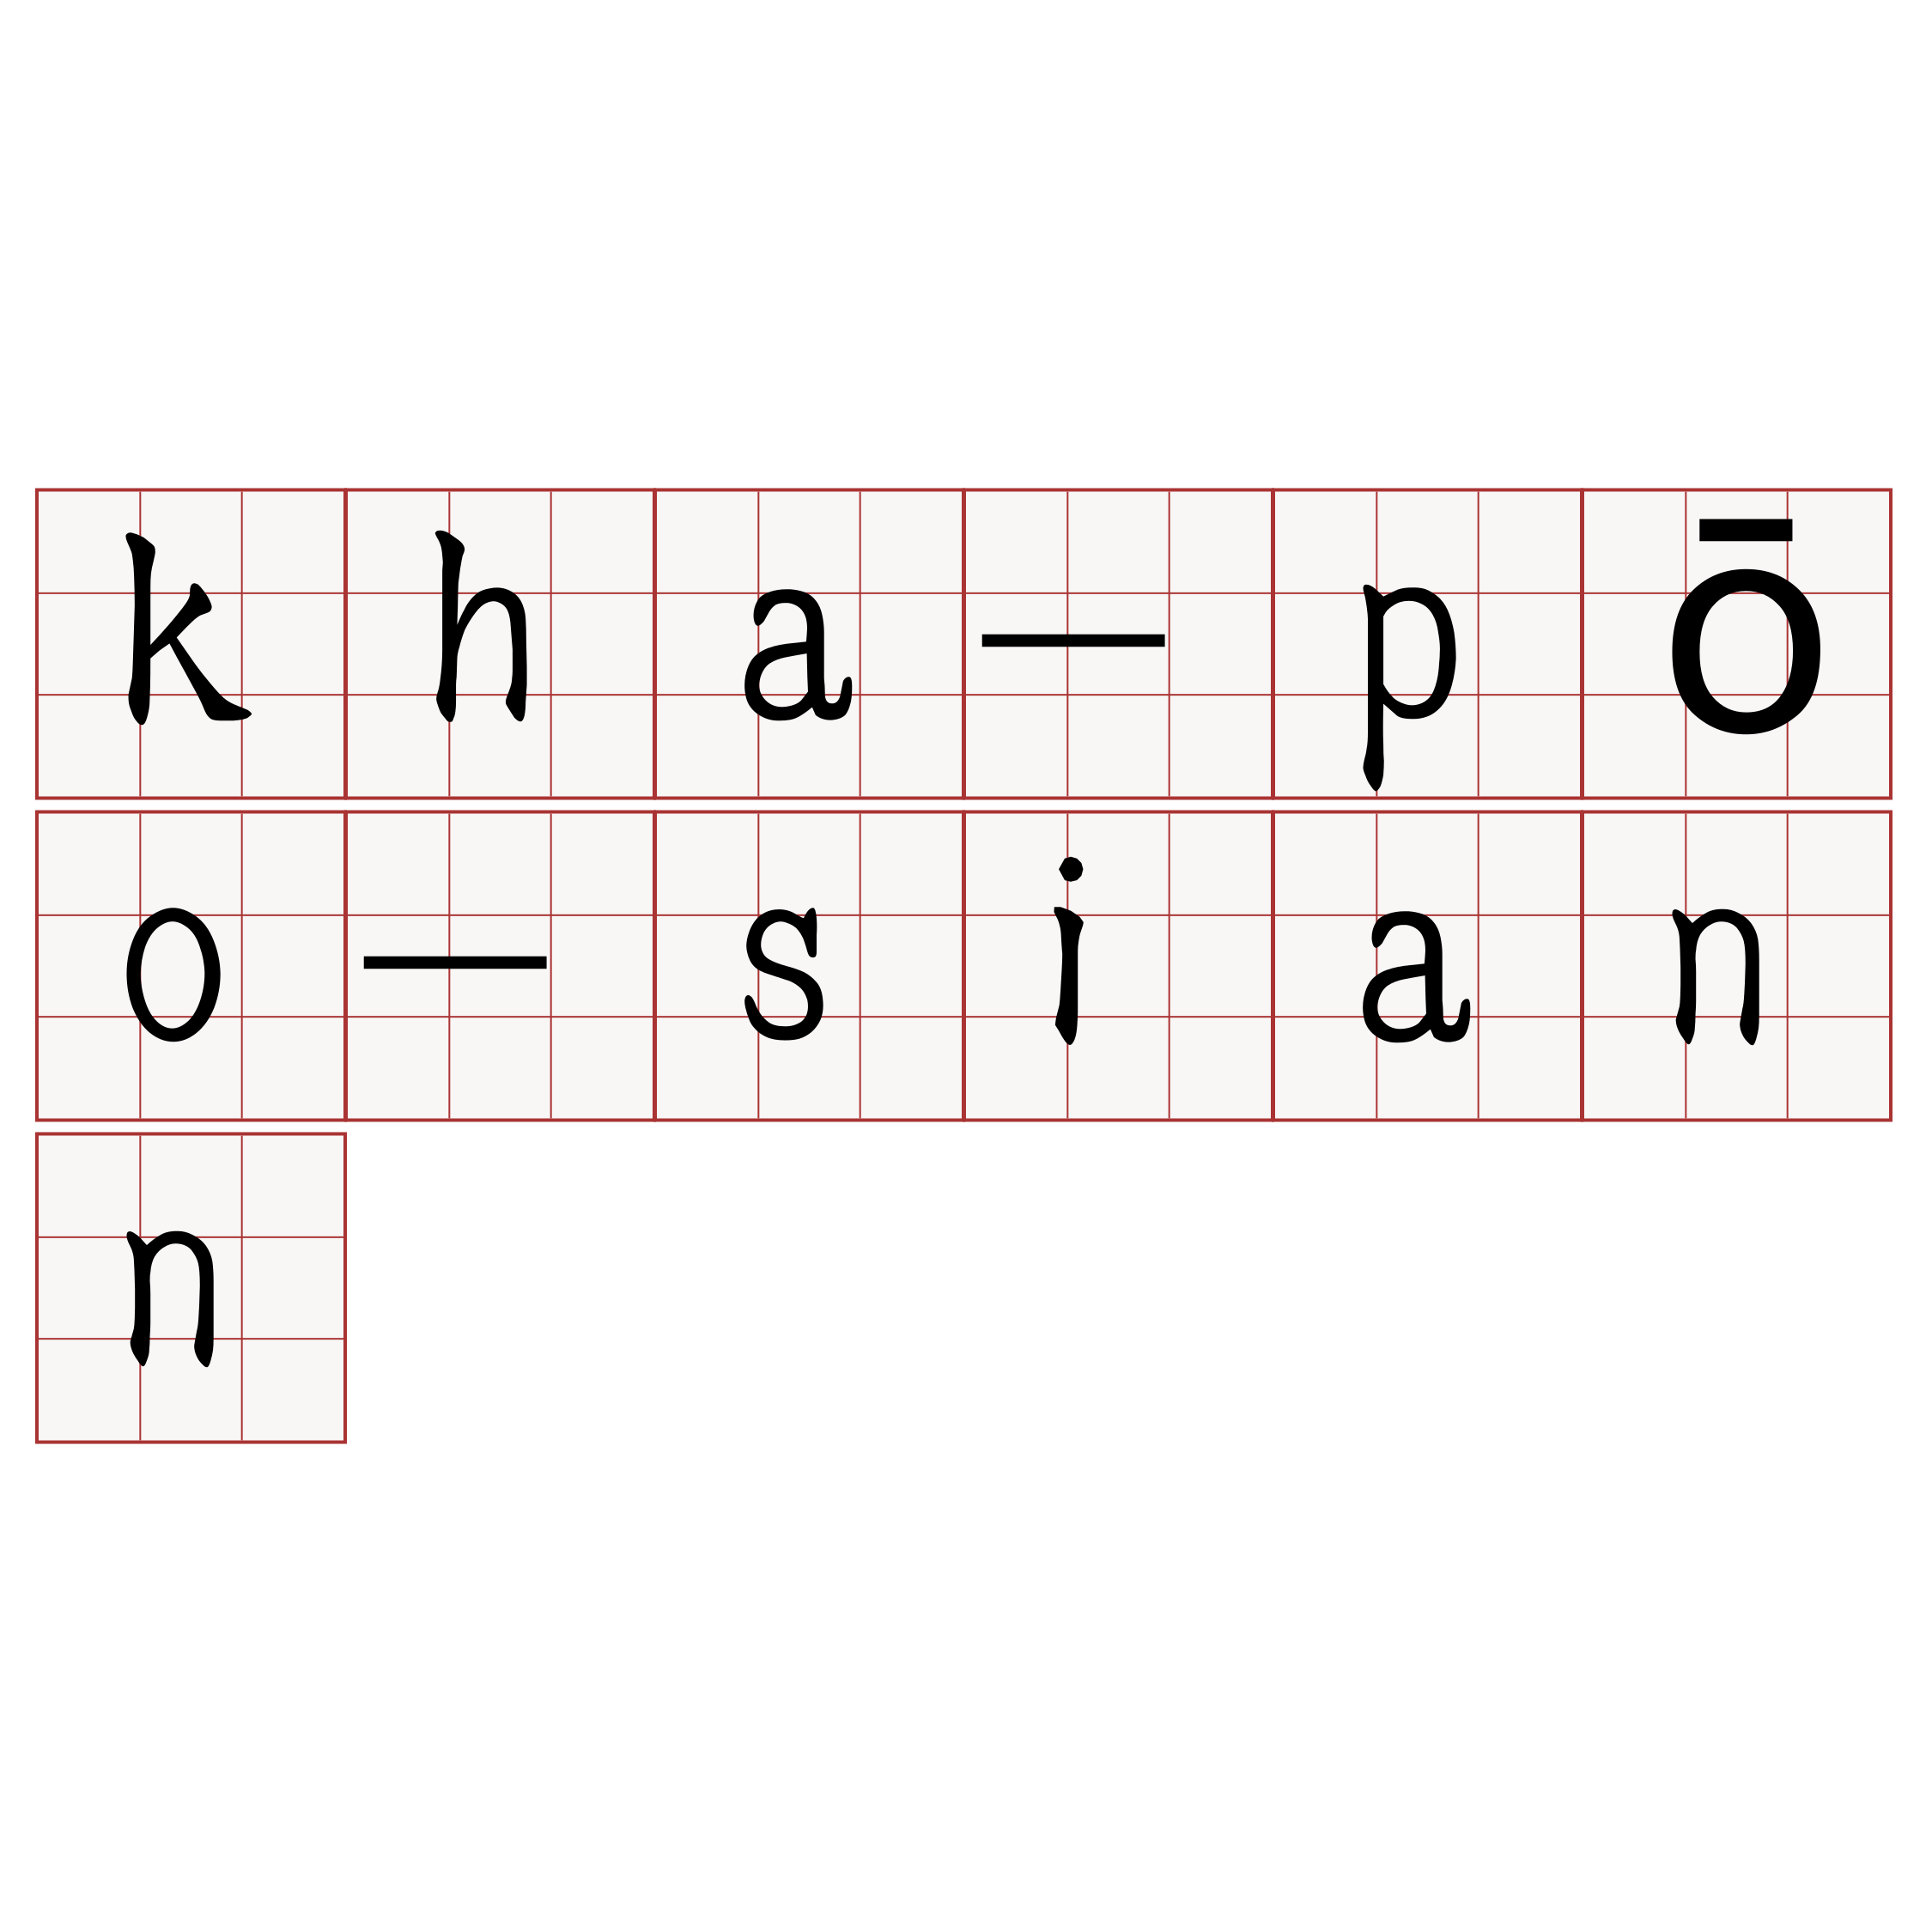 kha-pōo-siann